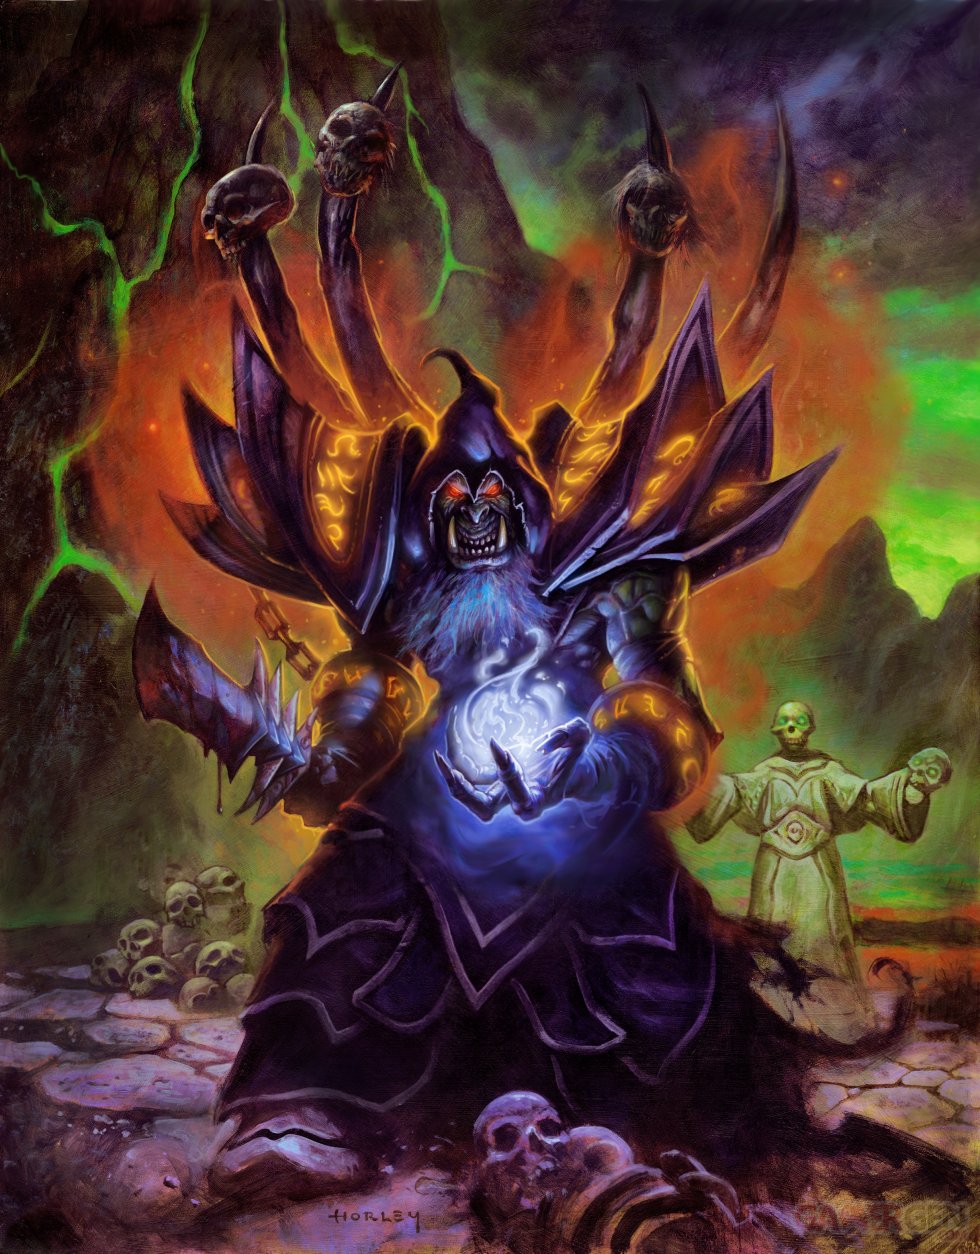 Hearthstone-Heroes-of-Warcraft_09-11-2013_artwork (3)